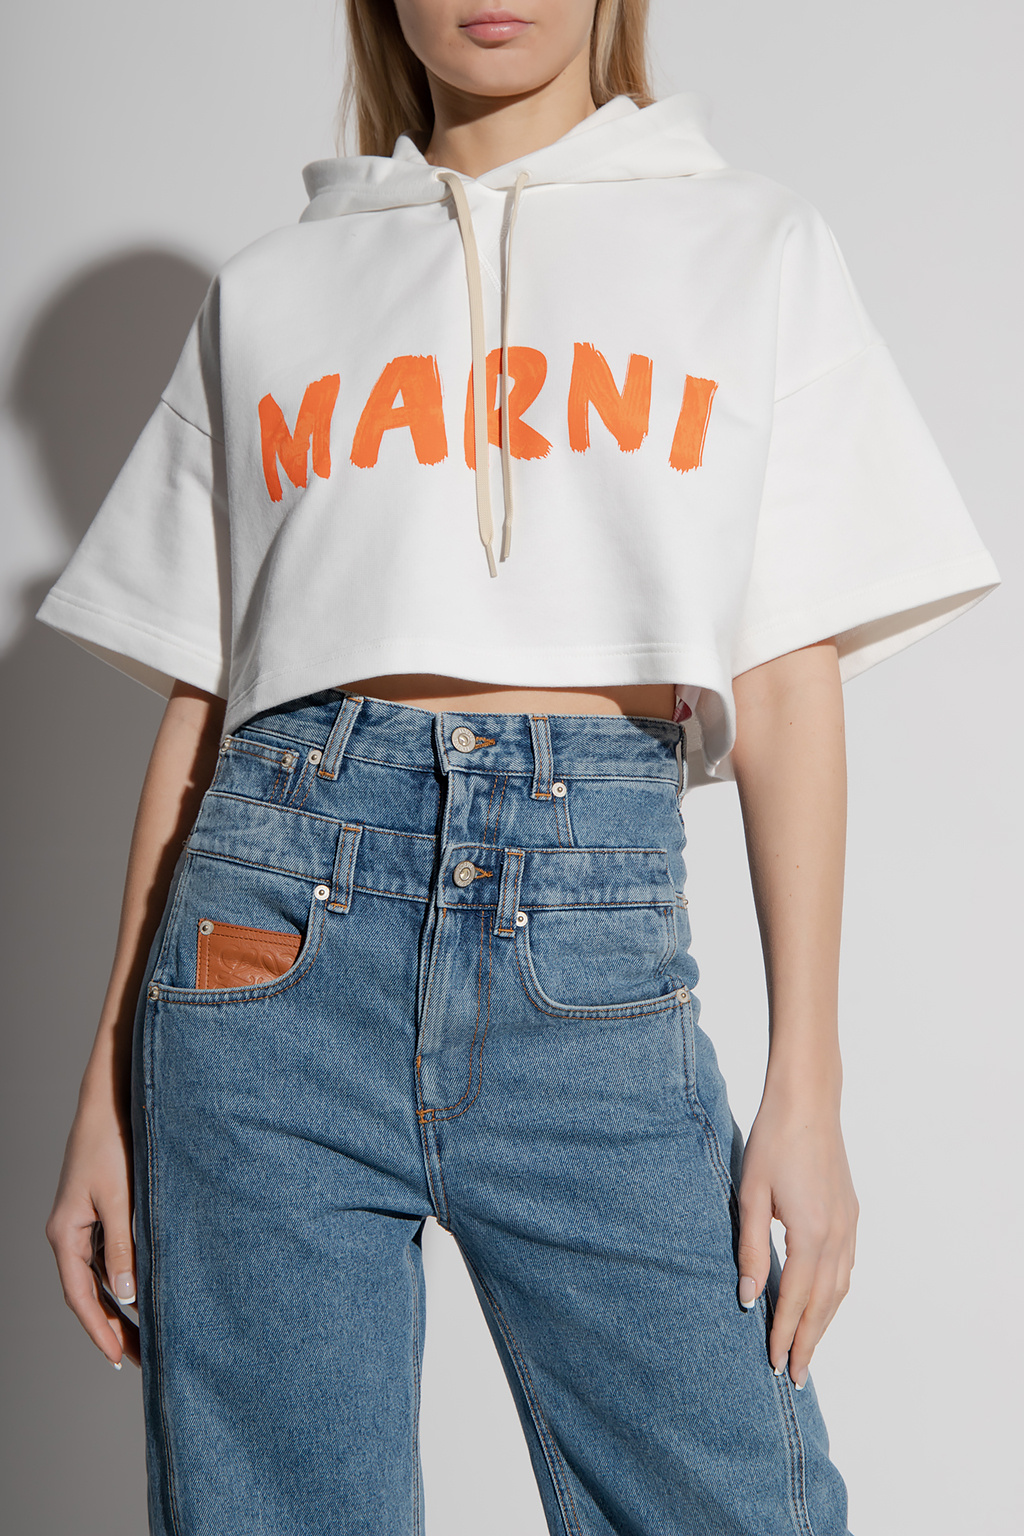 Marni Short-sleeved hoodie